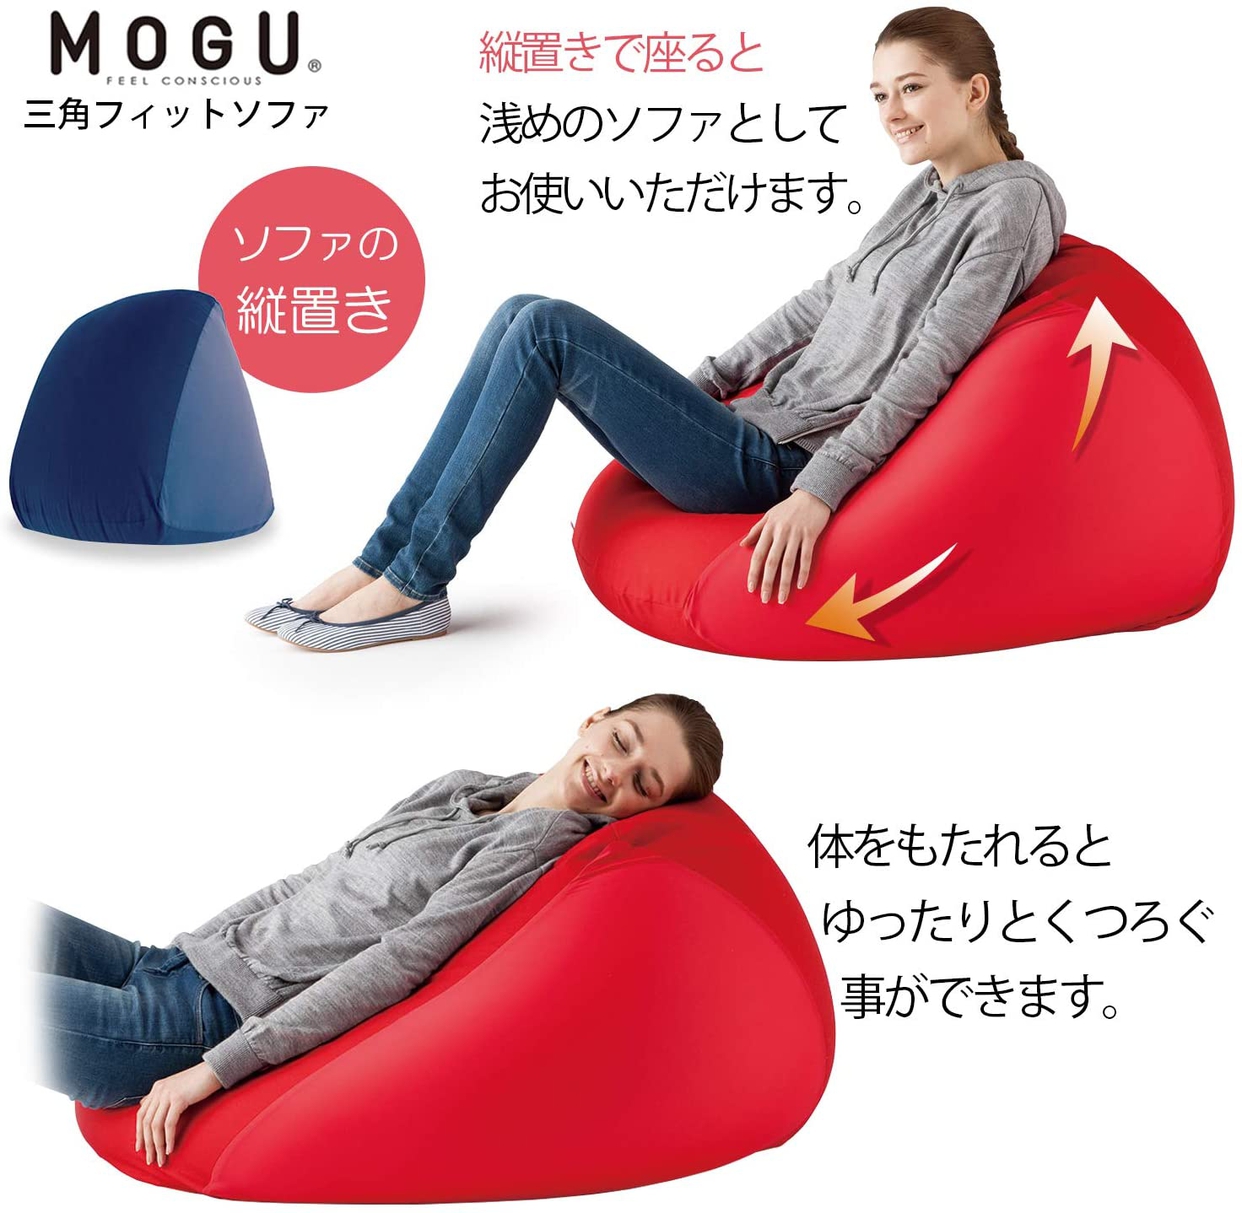 MOGU(モグ) 三角フィットソファの商品画像4 